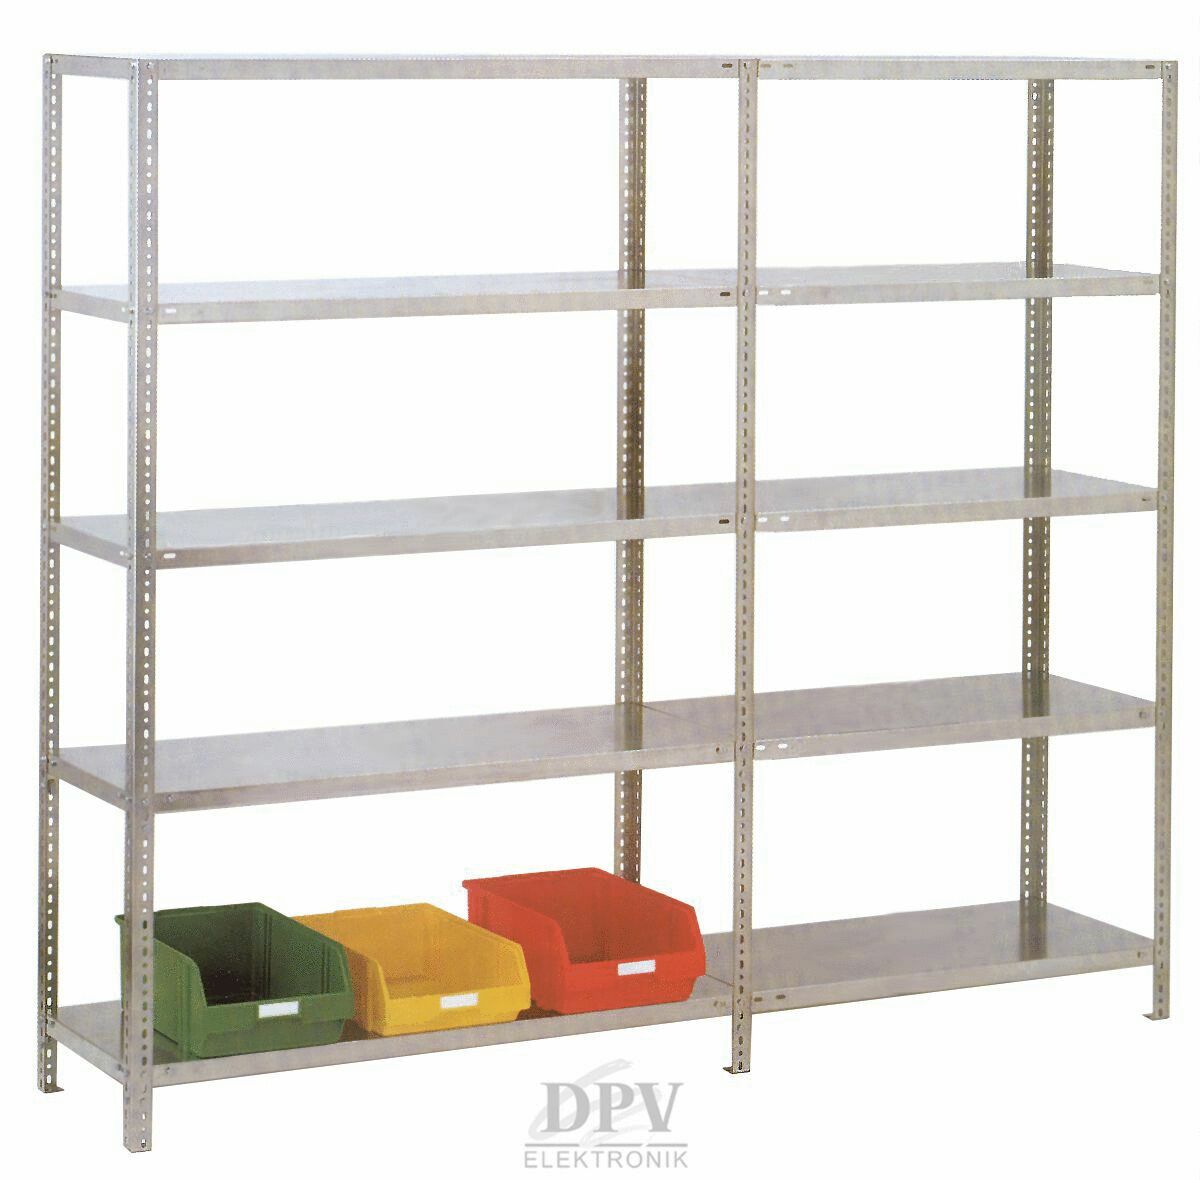 ESD Shelf racks